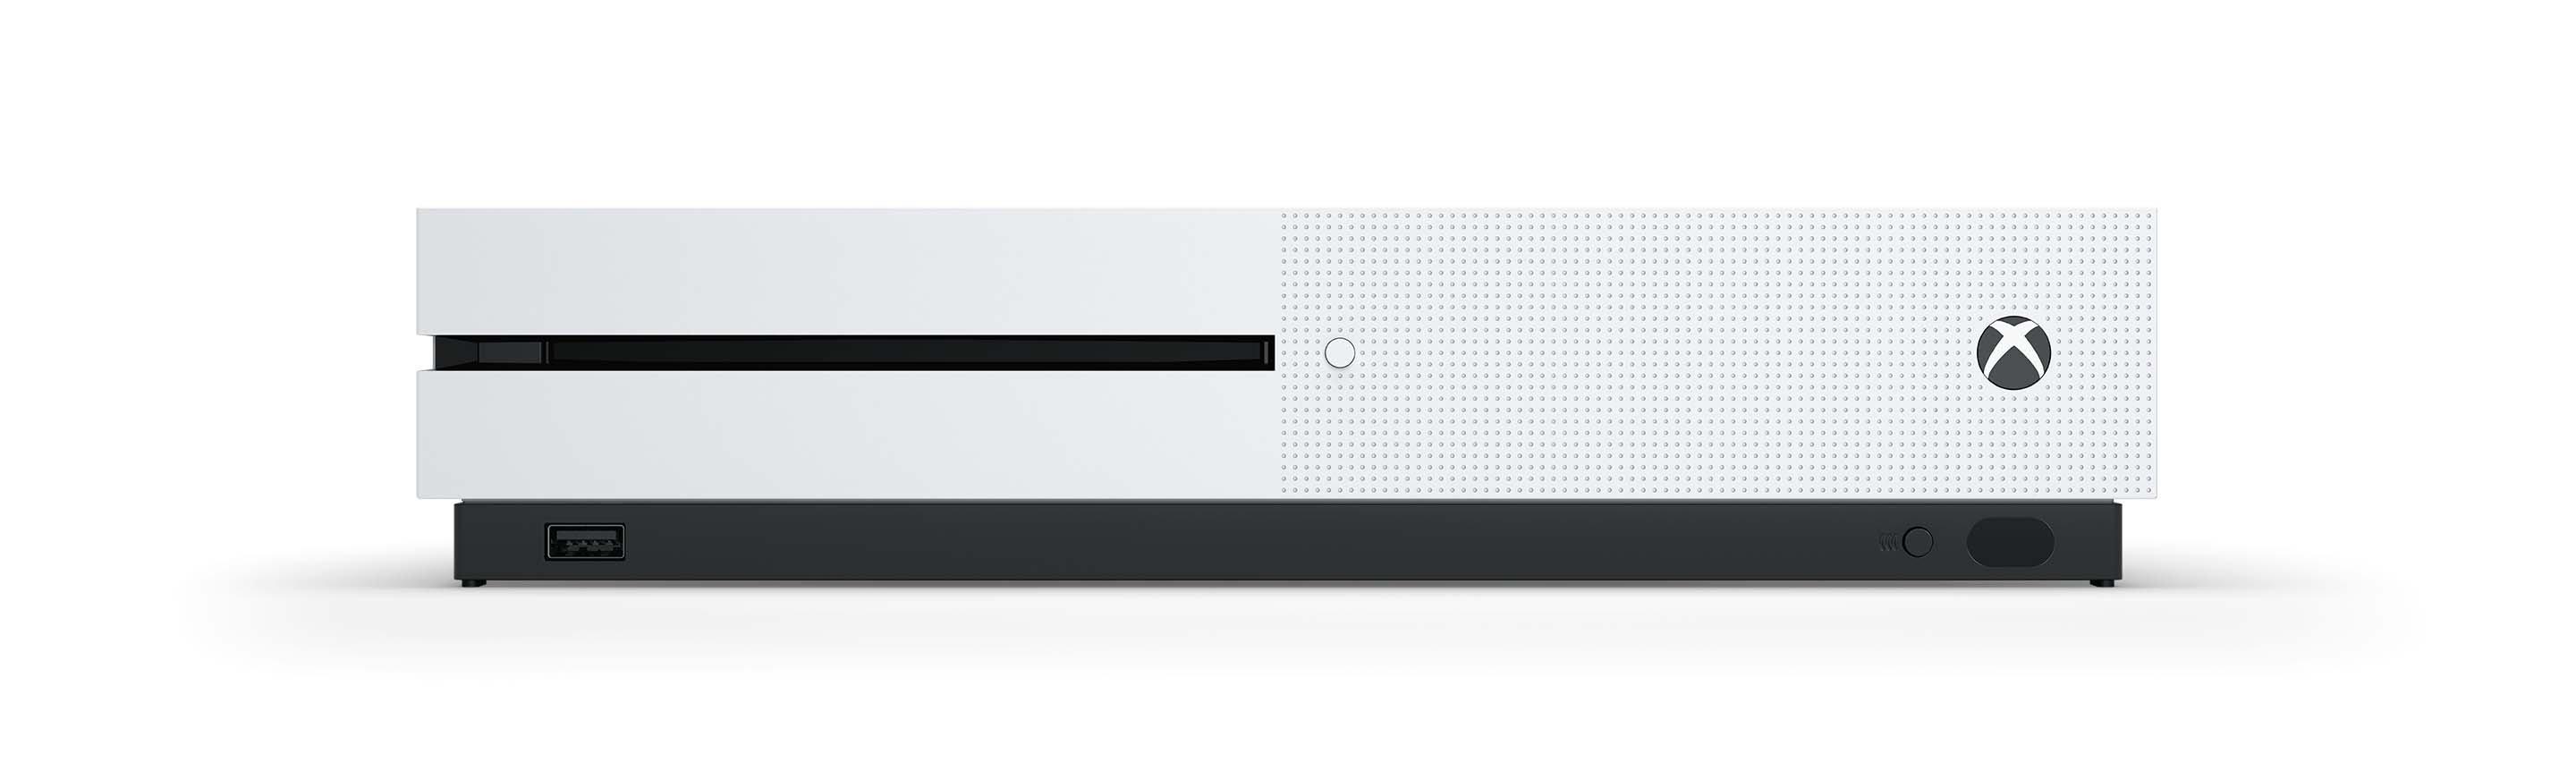 Microsoft Xbox One S Console 1TB - White